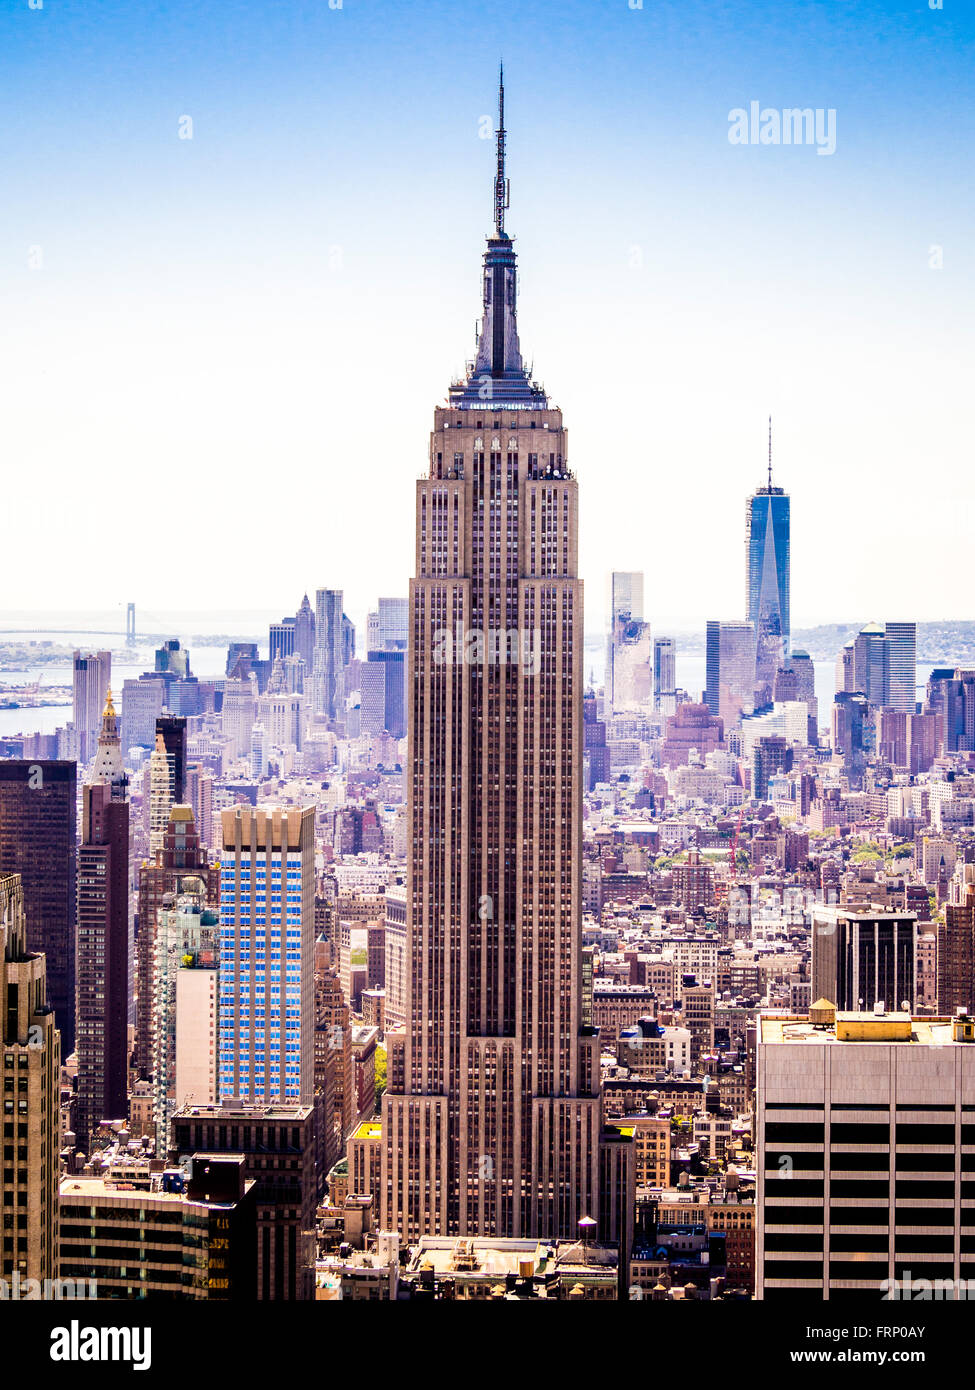 Das Empire State Building, New York City, USA, von der Aussichtsplattform des Rockefeller Center (Top of the Rock) betrachtet. Stockfoto